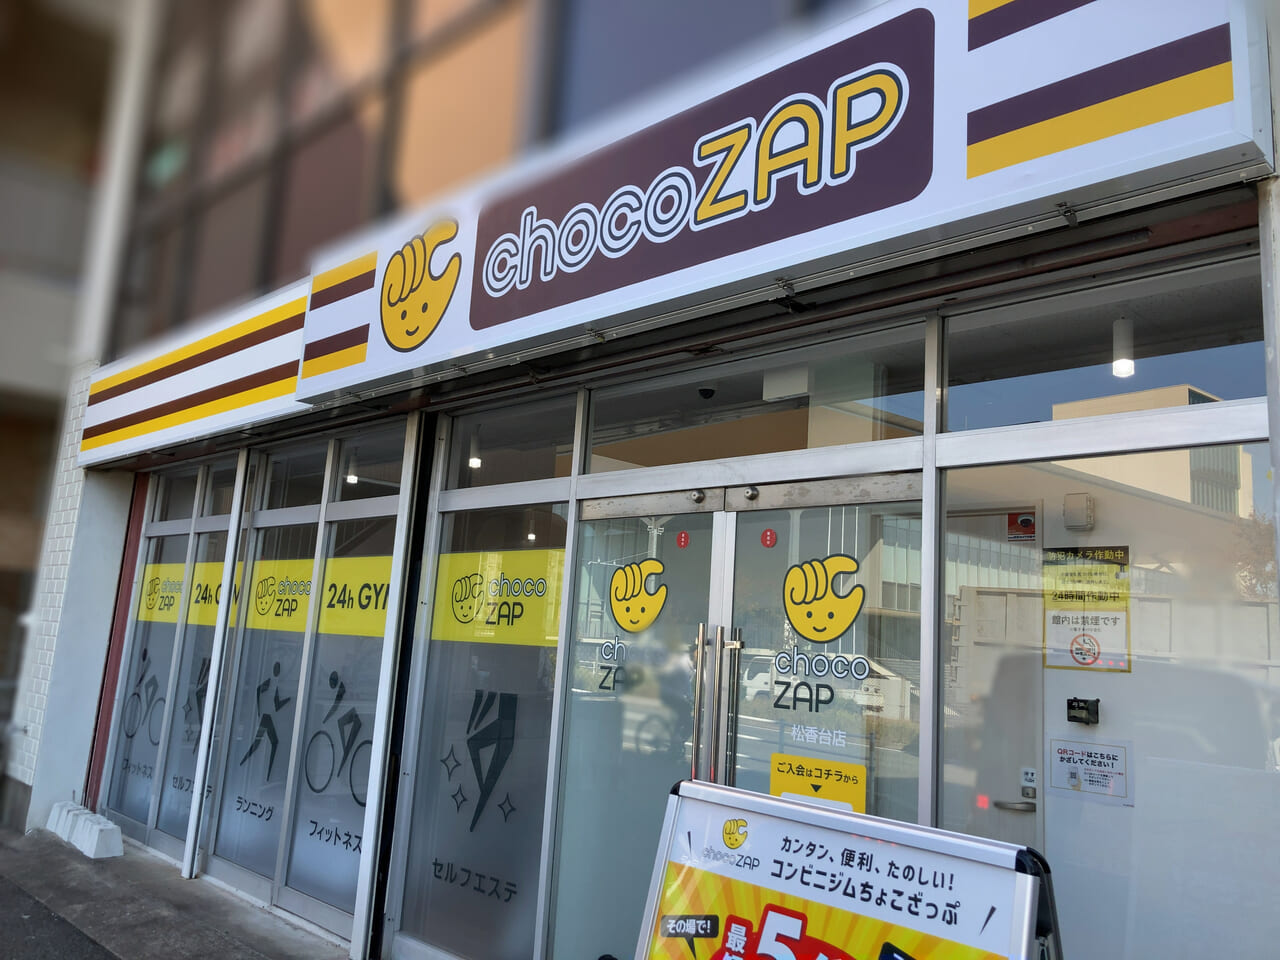 コンビニジム「chocoZAP松香台店」が、10月24日(火)にオープンしました。＜福岡市東区にある他5店舗では、12月より「ホワイトニング」や「セルフネイル」が設置予定です＞